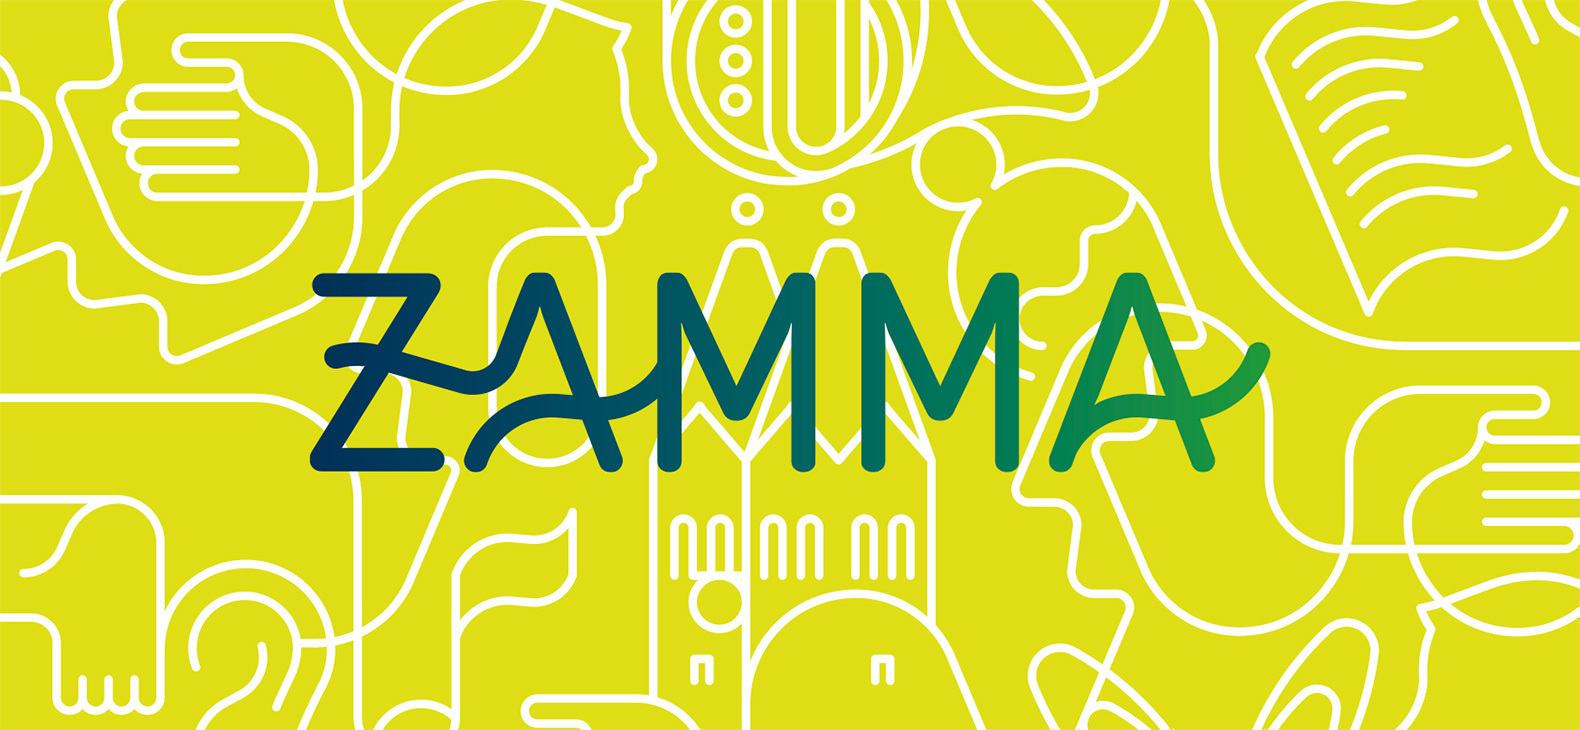 Zamma - Kulturfestival Oberbayern 2015 in Freising